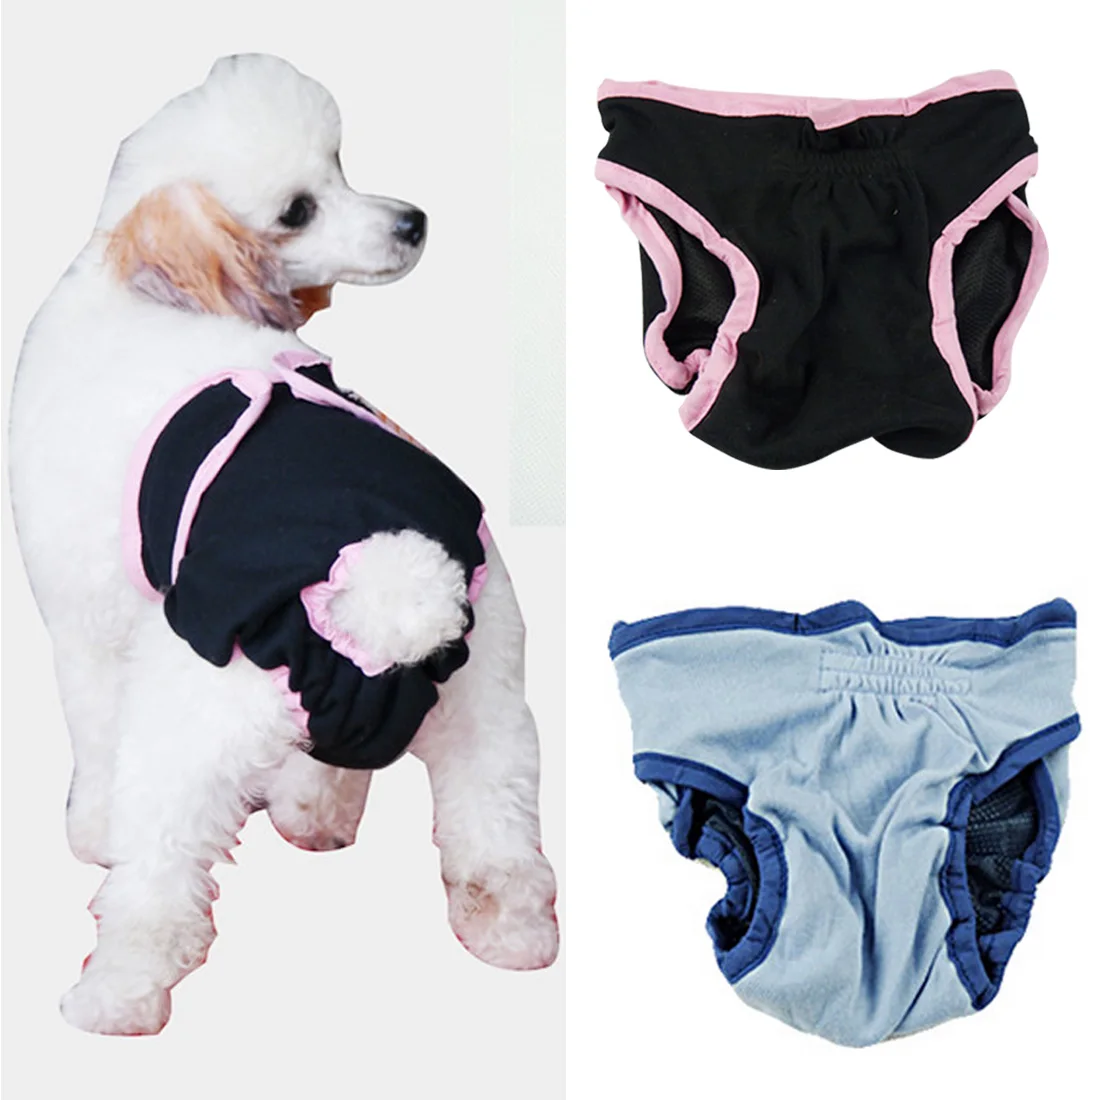 Милые физиологические штаны для собаки гигиеническая салфетка моющиеся женские шорты для собак трусики менструационное нижнее белье трусы для девочки собаки